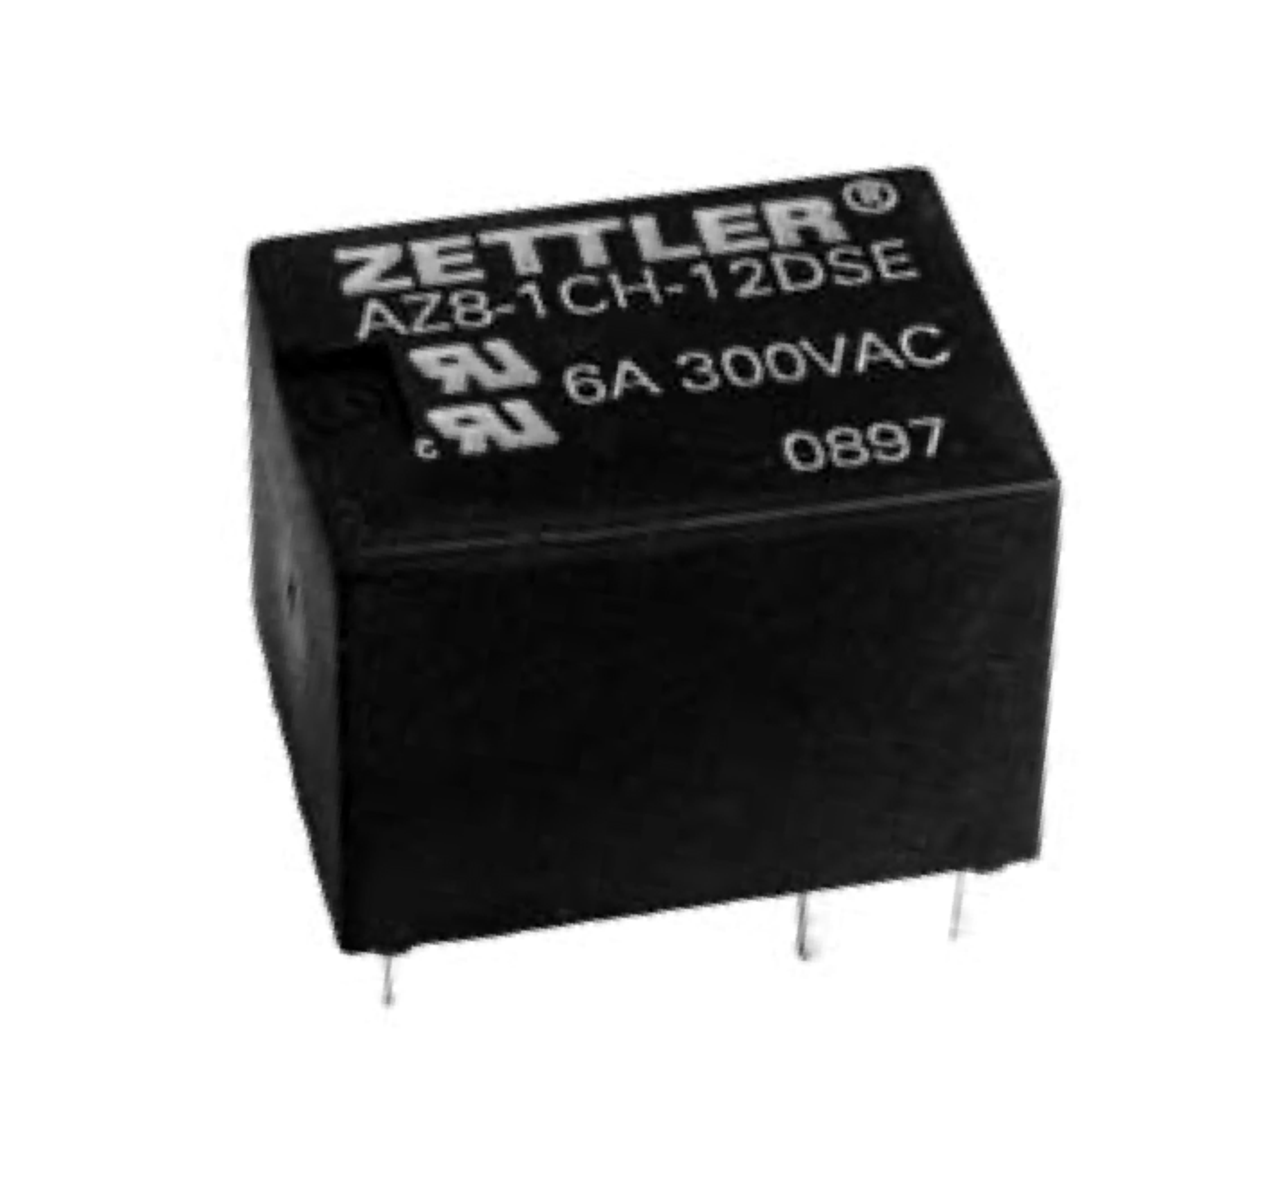 American Zettler AZ8-1CH-9DSA Power Relay